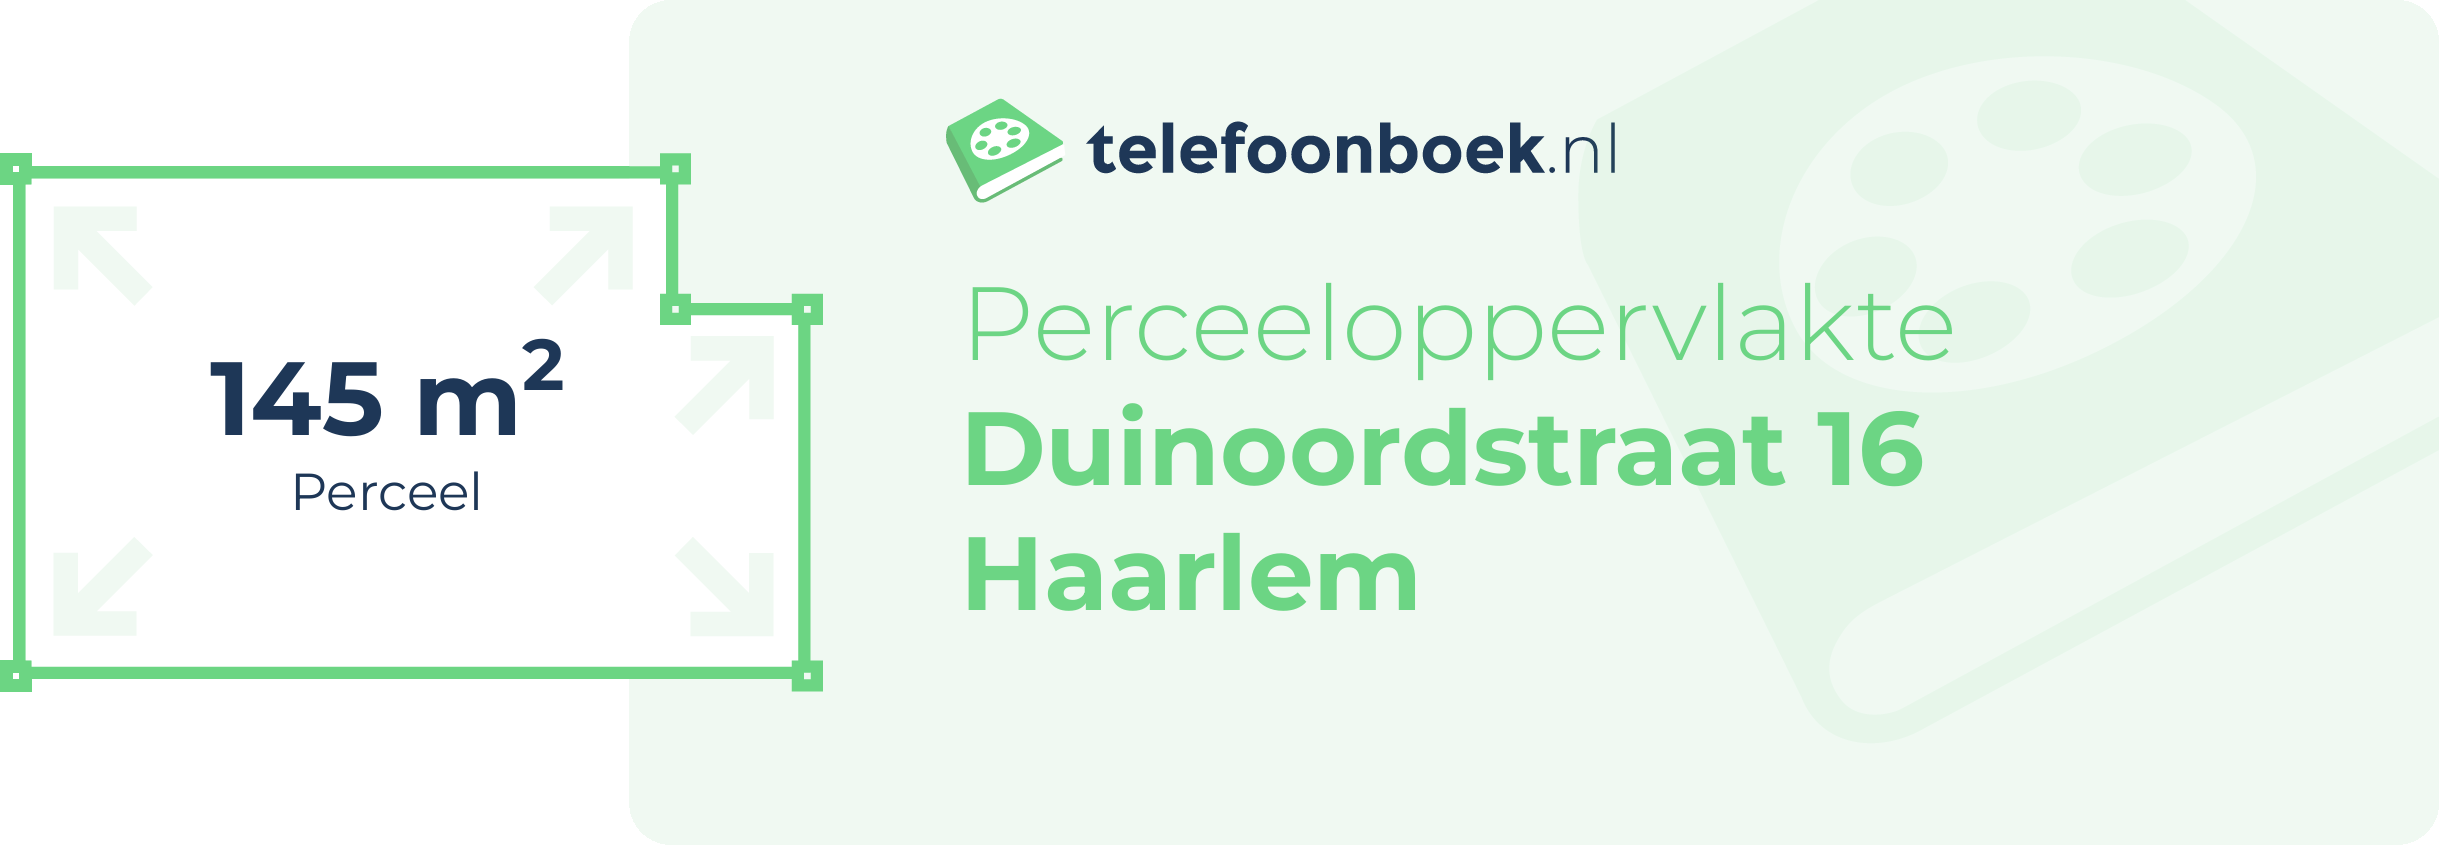 Perceeloppervlakte Duinoordstraat 16 Haarlem